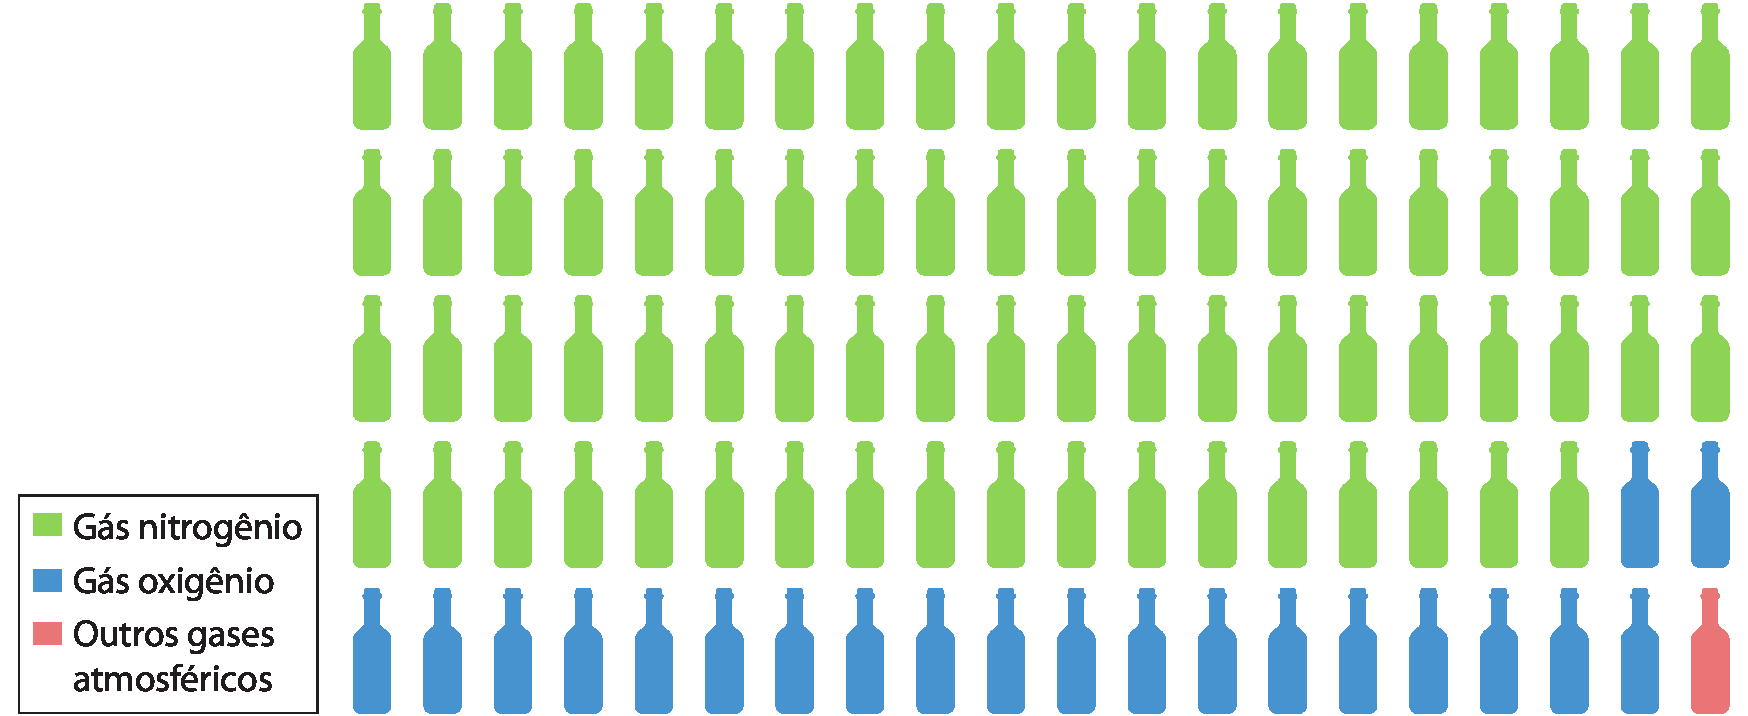 Esquema. 100 garrafas divididas em cinco fileiras de 20 cada. 78 garrafas verdes representam o gás nitrogênio, 21 garrafas azuis representam o gás oxigênio, e uma garrafa laranja representa outros gases atmosféricos.